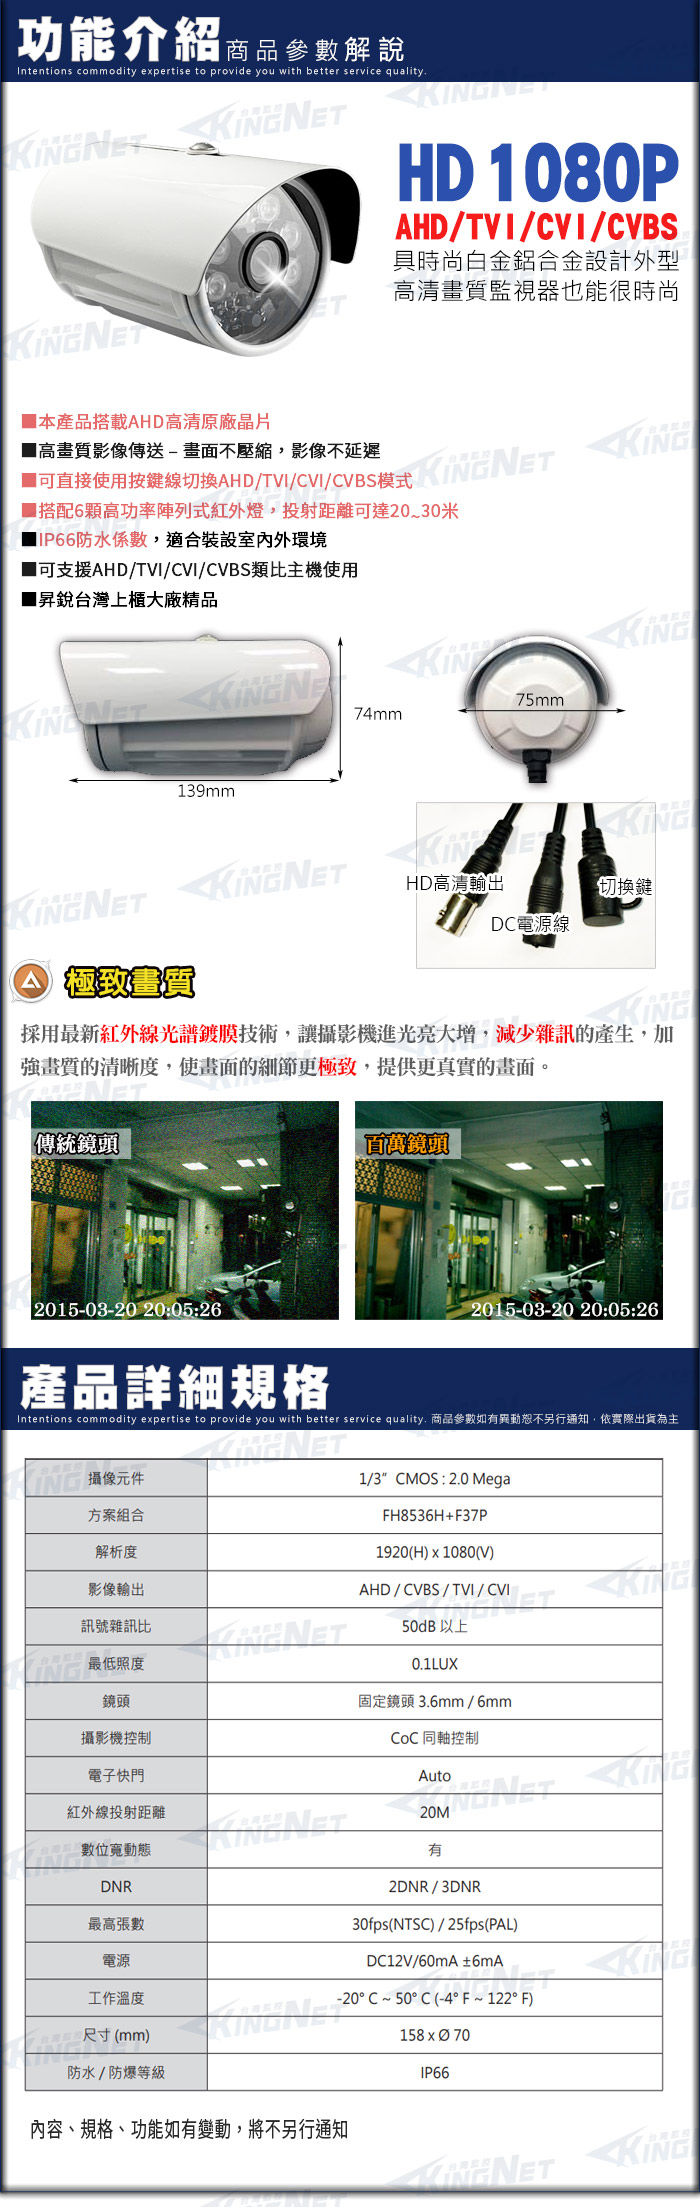 監視器攝影機 KINGNET AHD 1080P 夜視紅外線攝影機 防水 8陣列燈攝影機 IP66